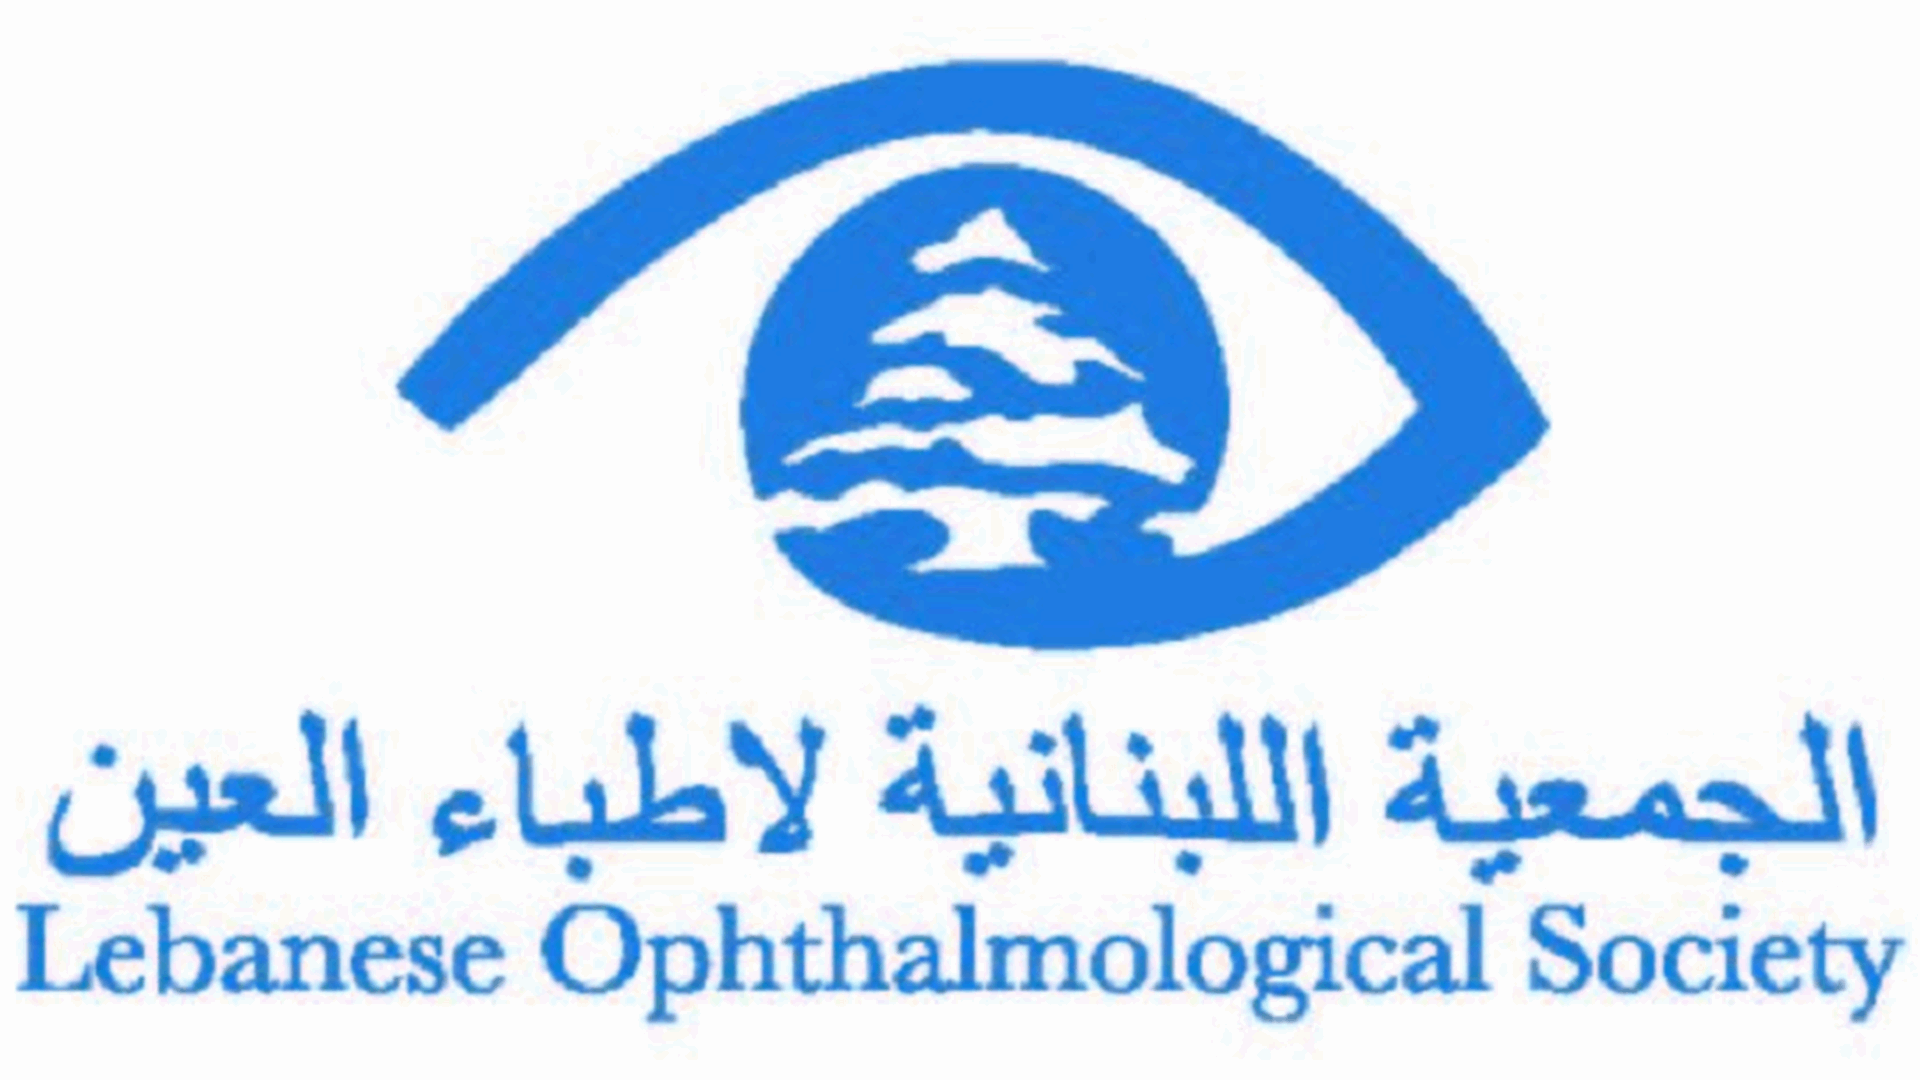 الجمعية اللبنانية لأطباء العين حذرت من عملية تغيير لون العيون التجميلي بواسطة الليزر